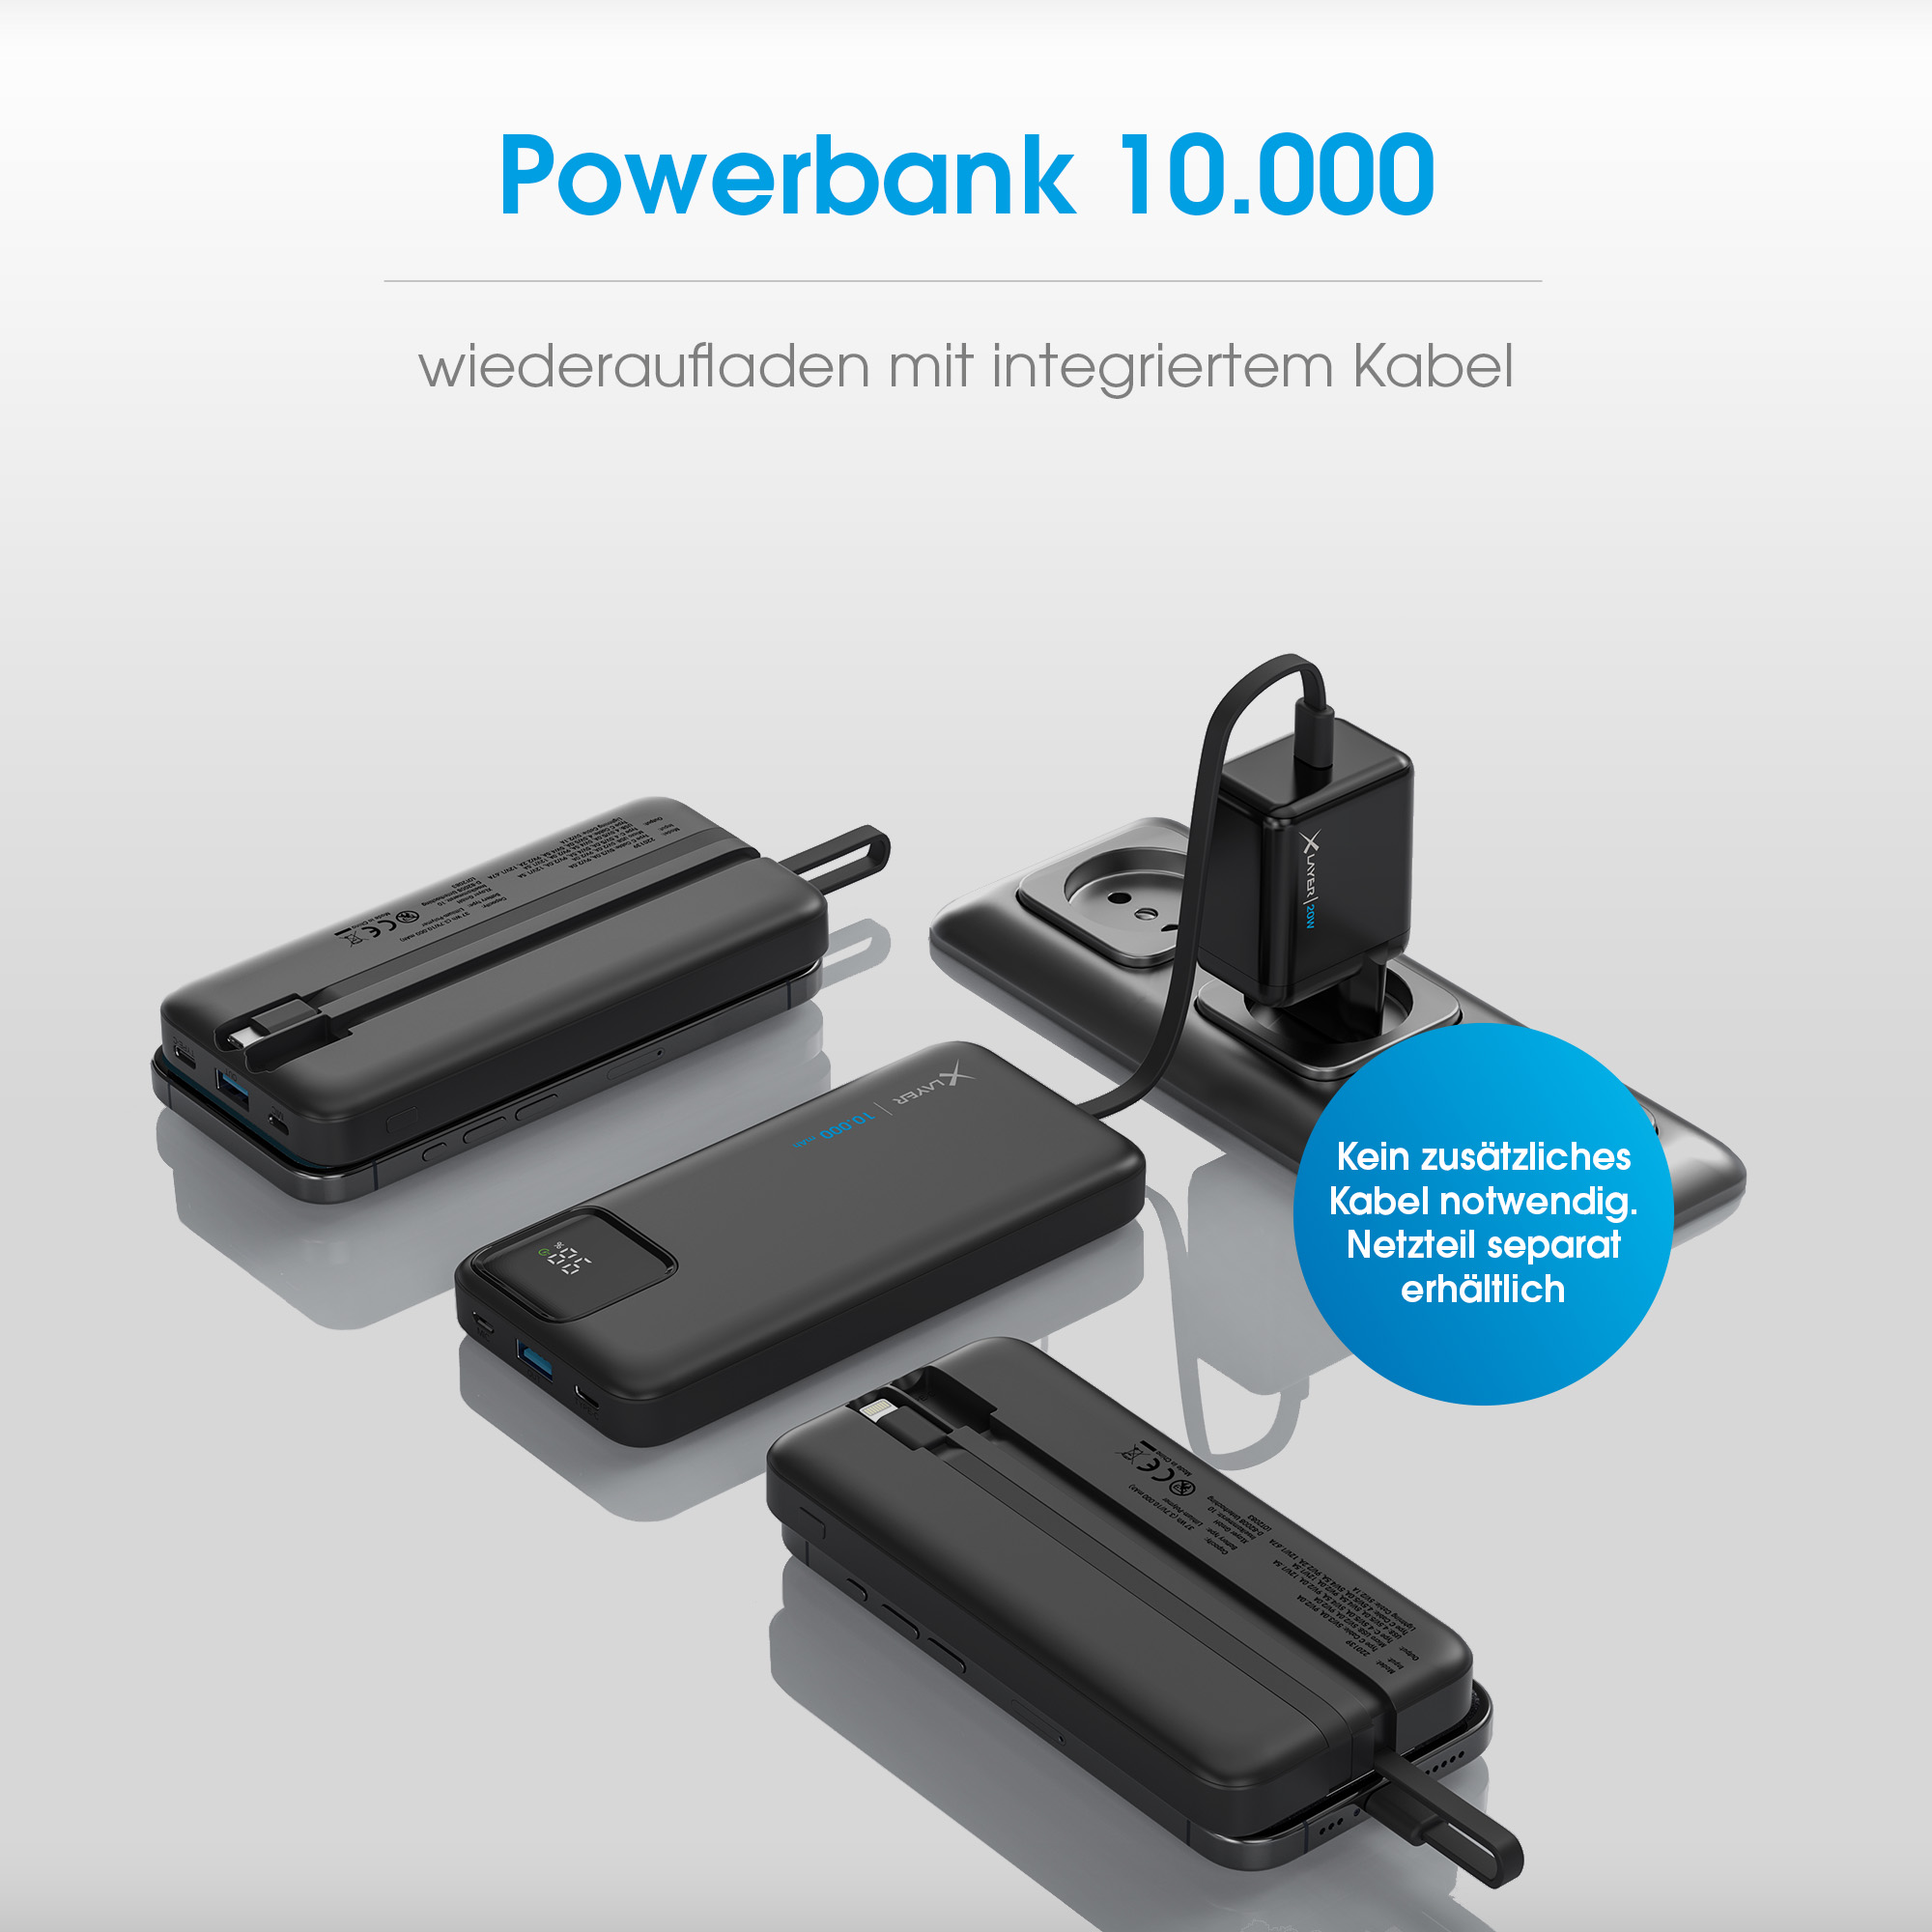 PD 37 mit XLAYER integrierten Powerbank schwarz Kabeln XLayer 20W Black Powerbank mAh 10.000 zwei